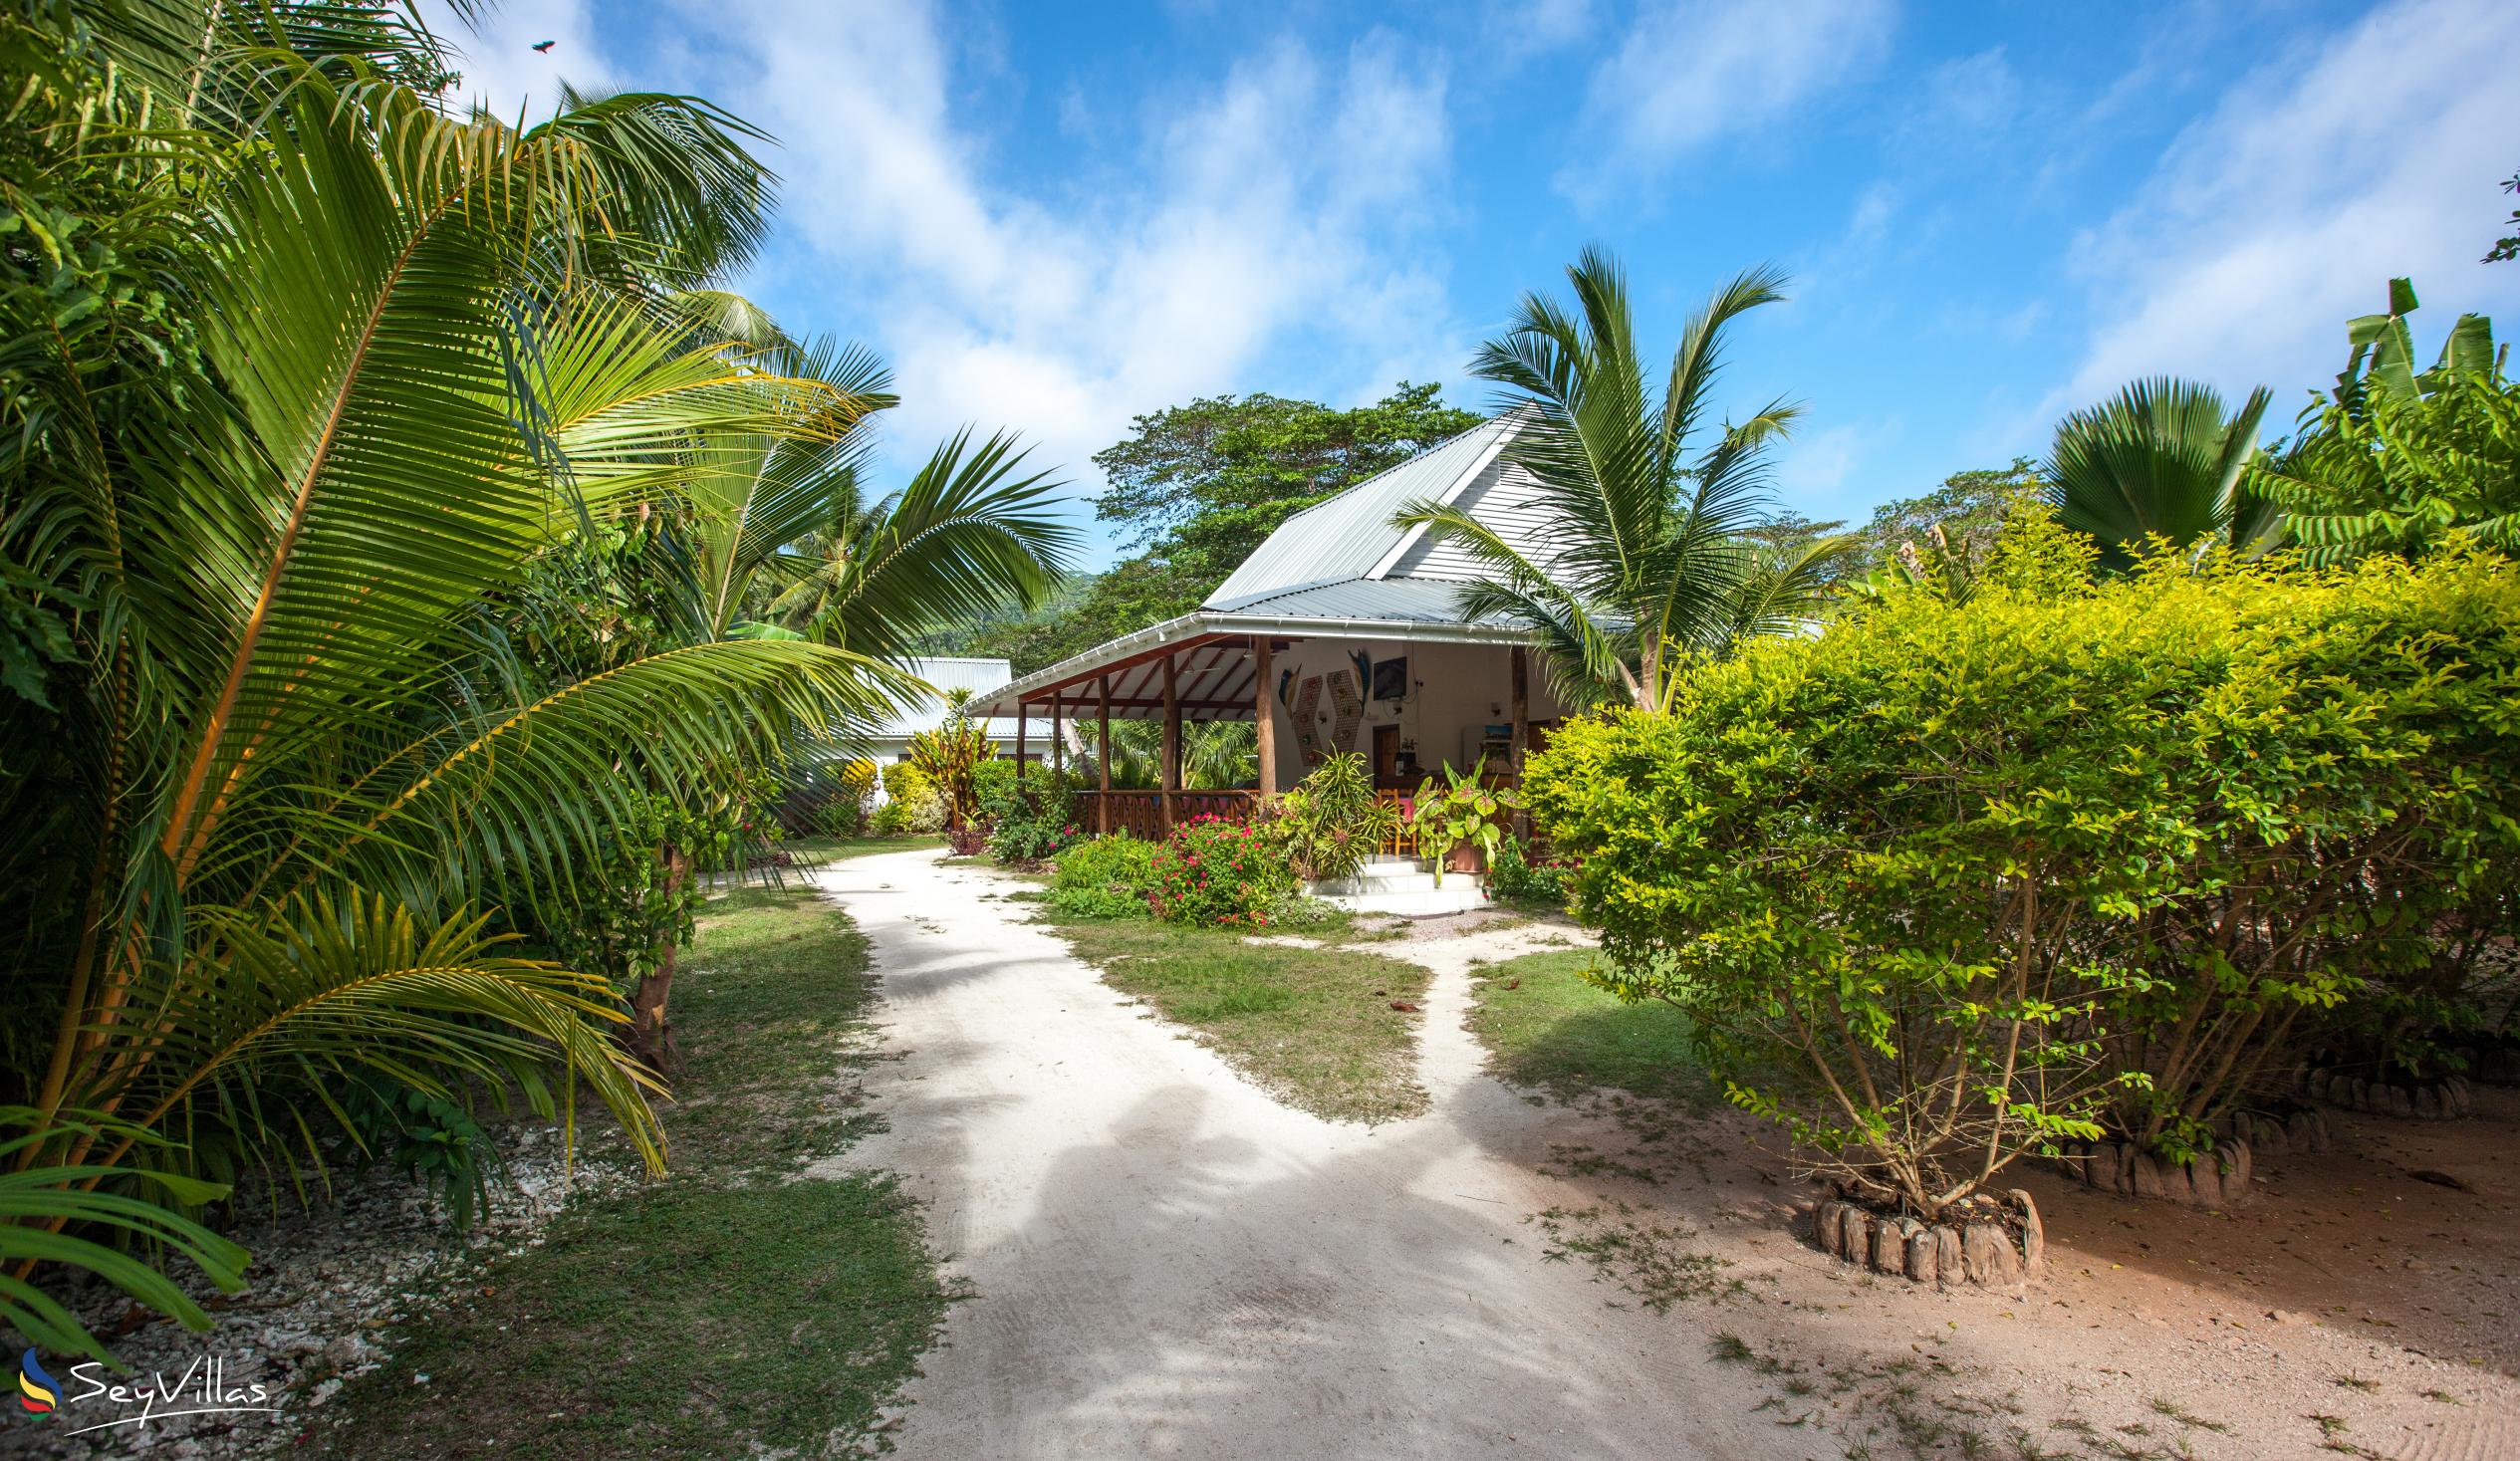 Foto 16: Villa Veuve - Aussenbereich - La Digue (Seychellen)